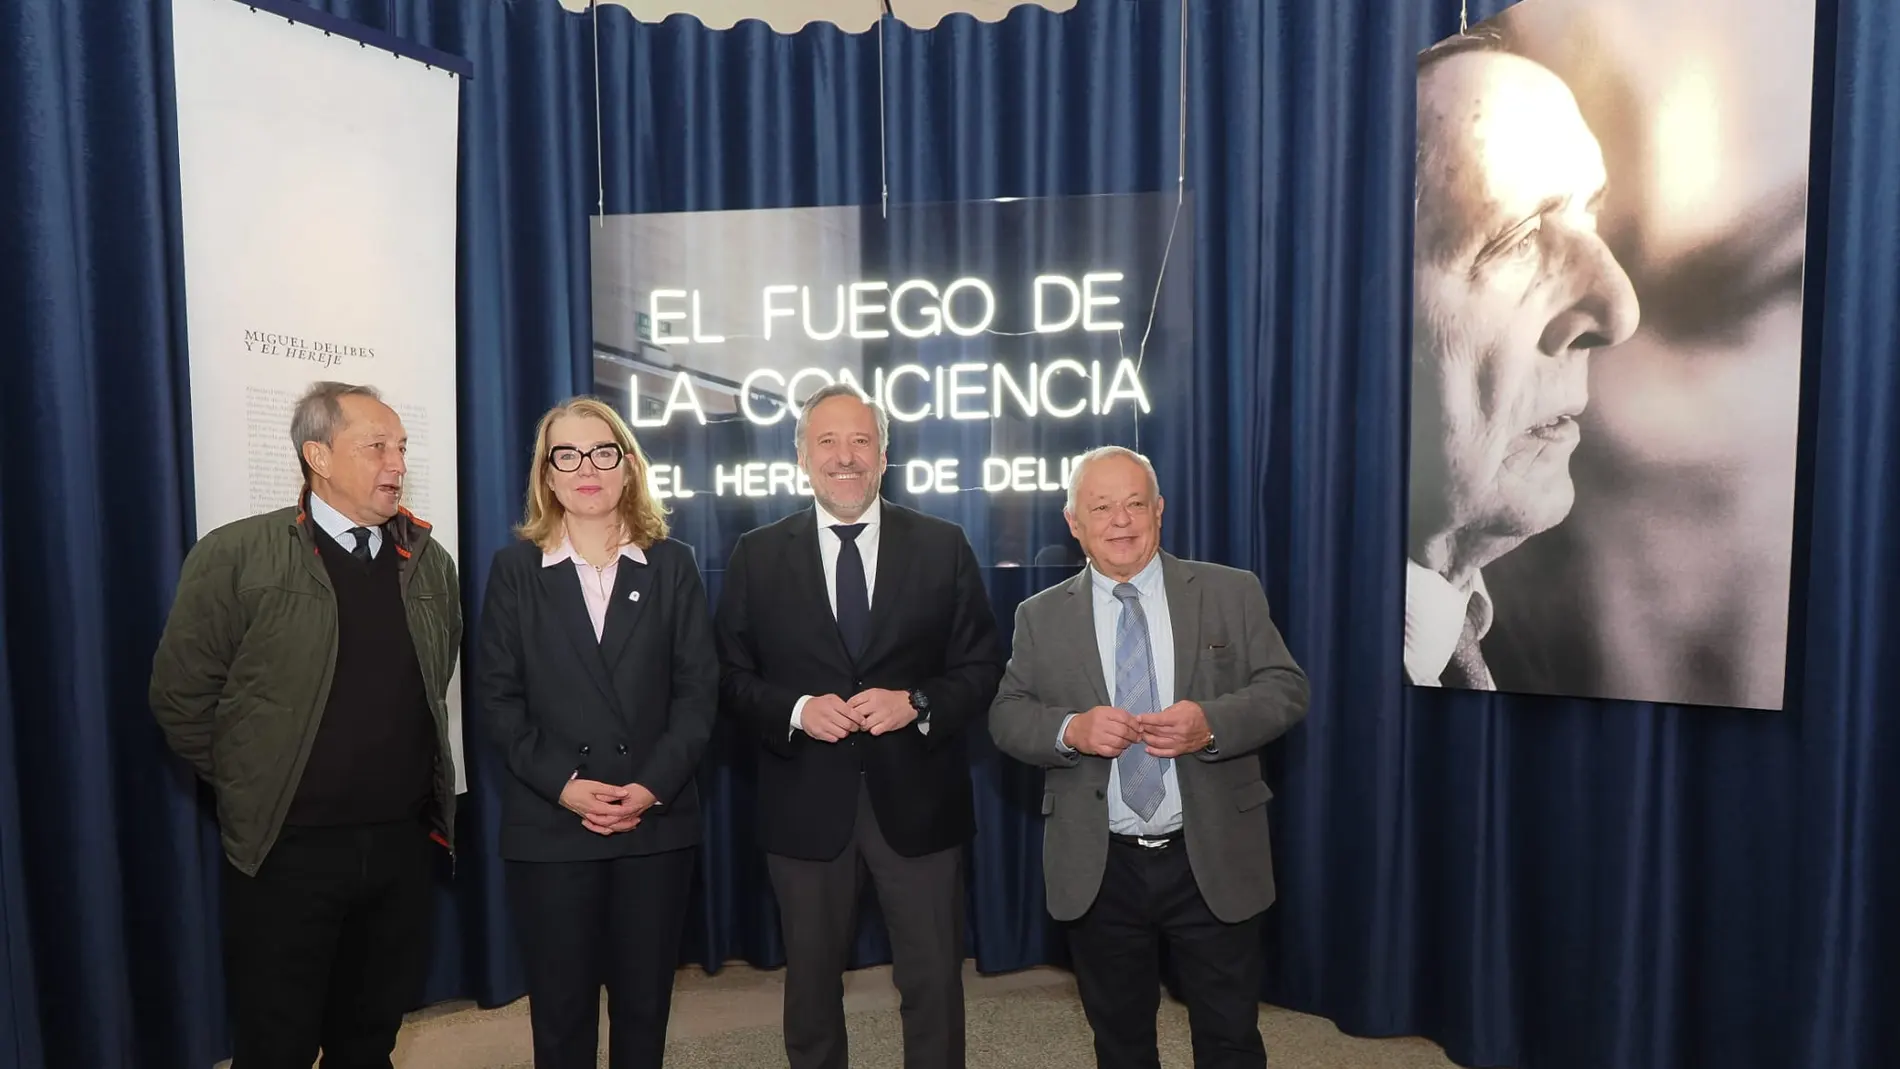 Eva Guillermina Fernández visita la exposición junto a Carlos Pollán, Gonzalo Santonja y Germán Delibes